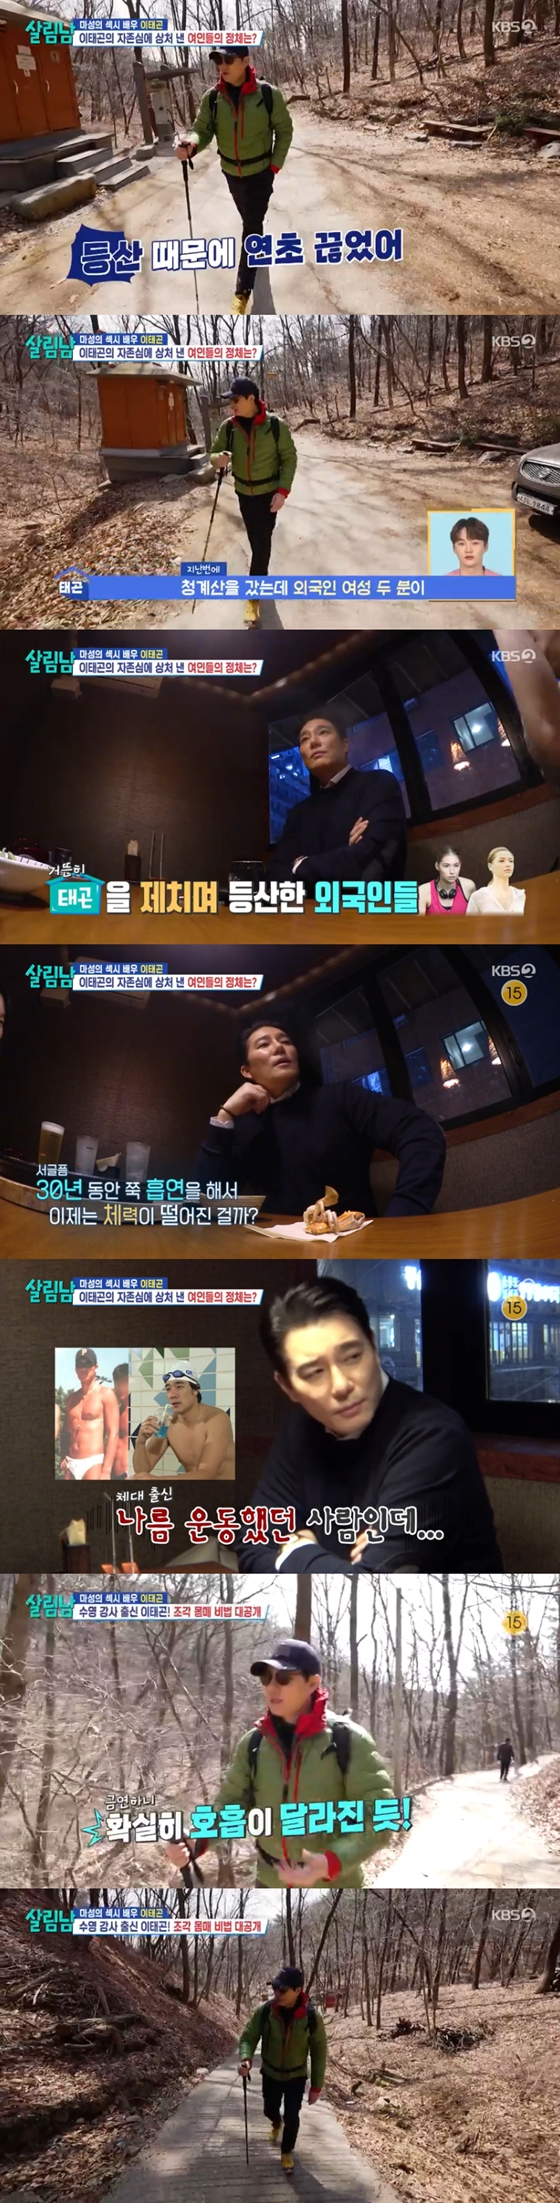 KBS 2TV '살림하는 남자들 시즌2'의 이태곤./사진=KBS 2TV '살림하는 남자들 시즌2' 방송 화면 캡처